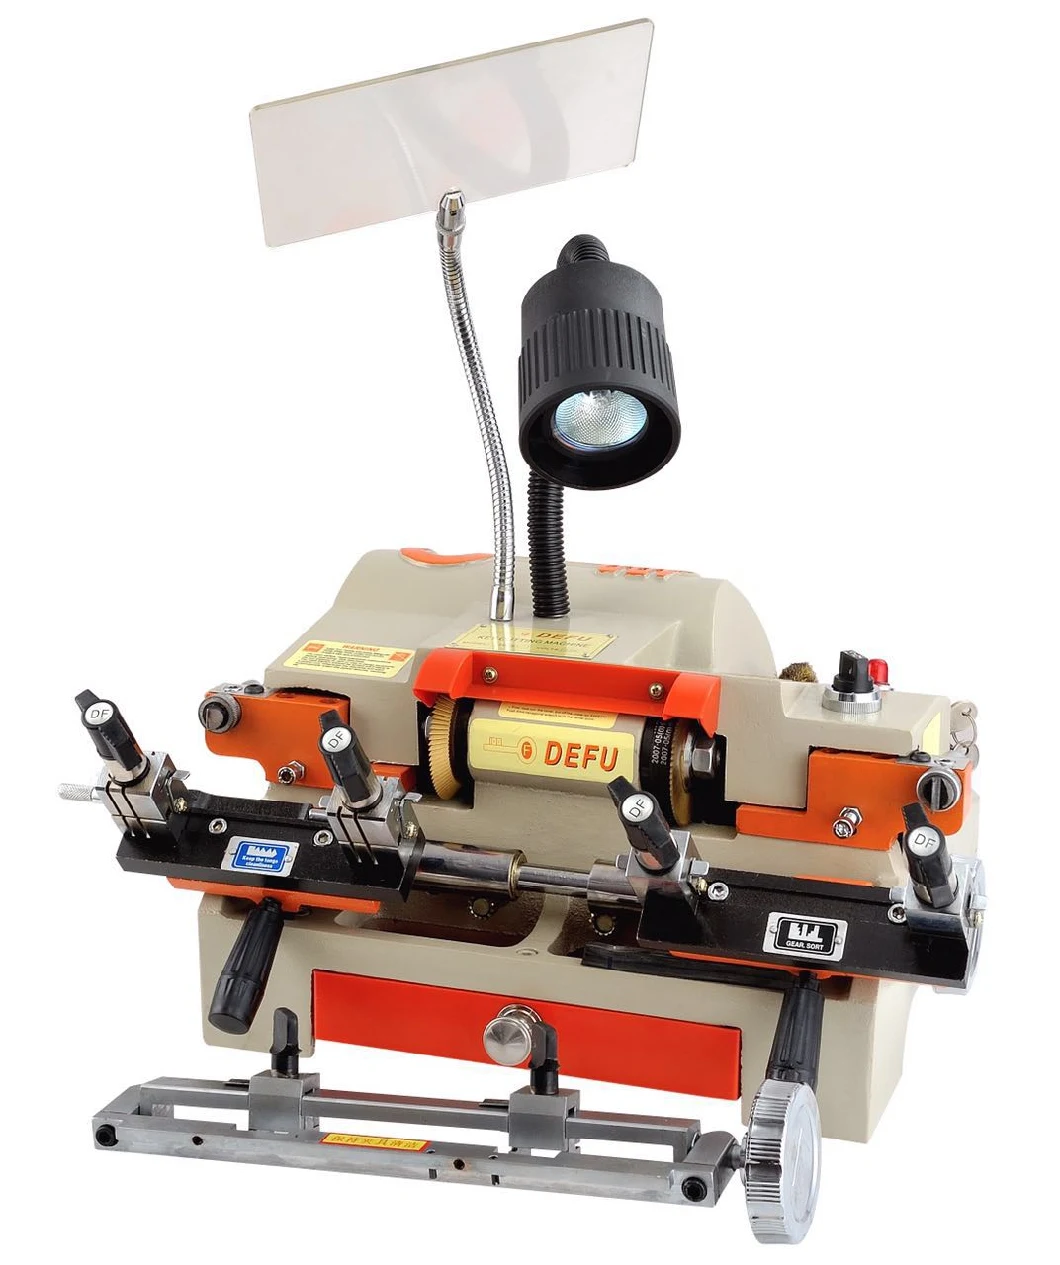 Defu Rh-2A Factory Key Cutting Machine for Accurate Copy